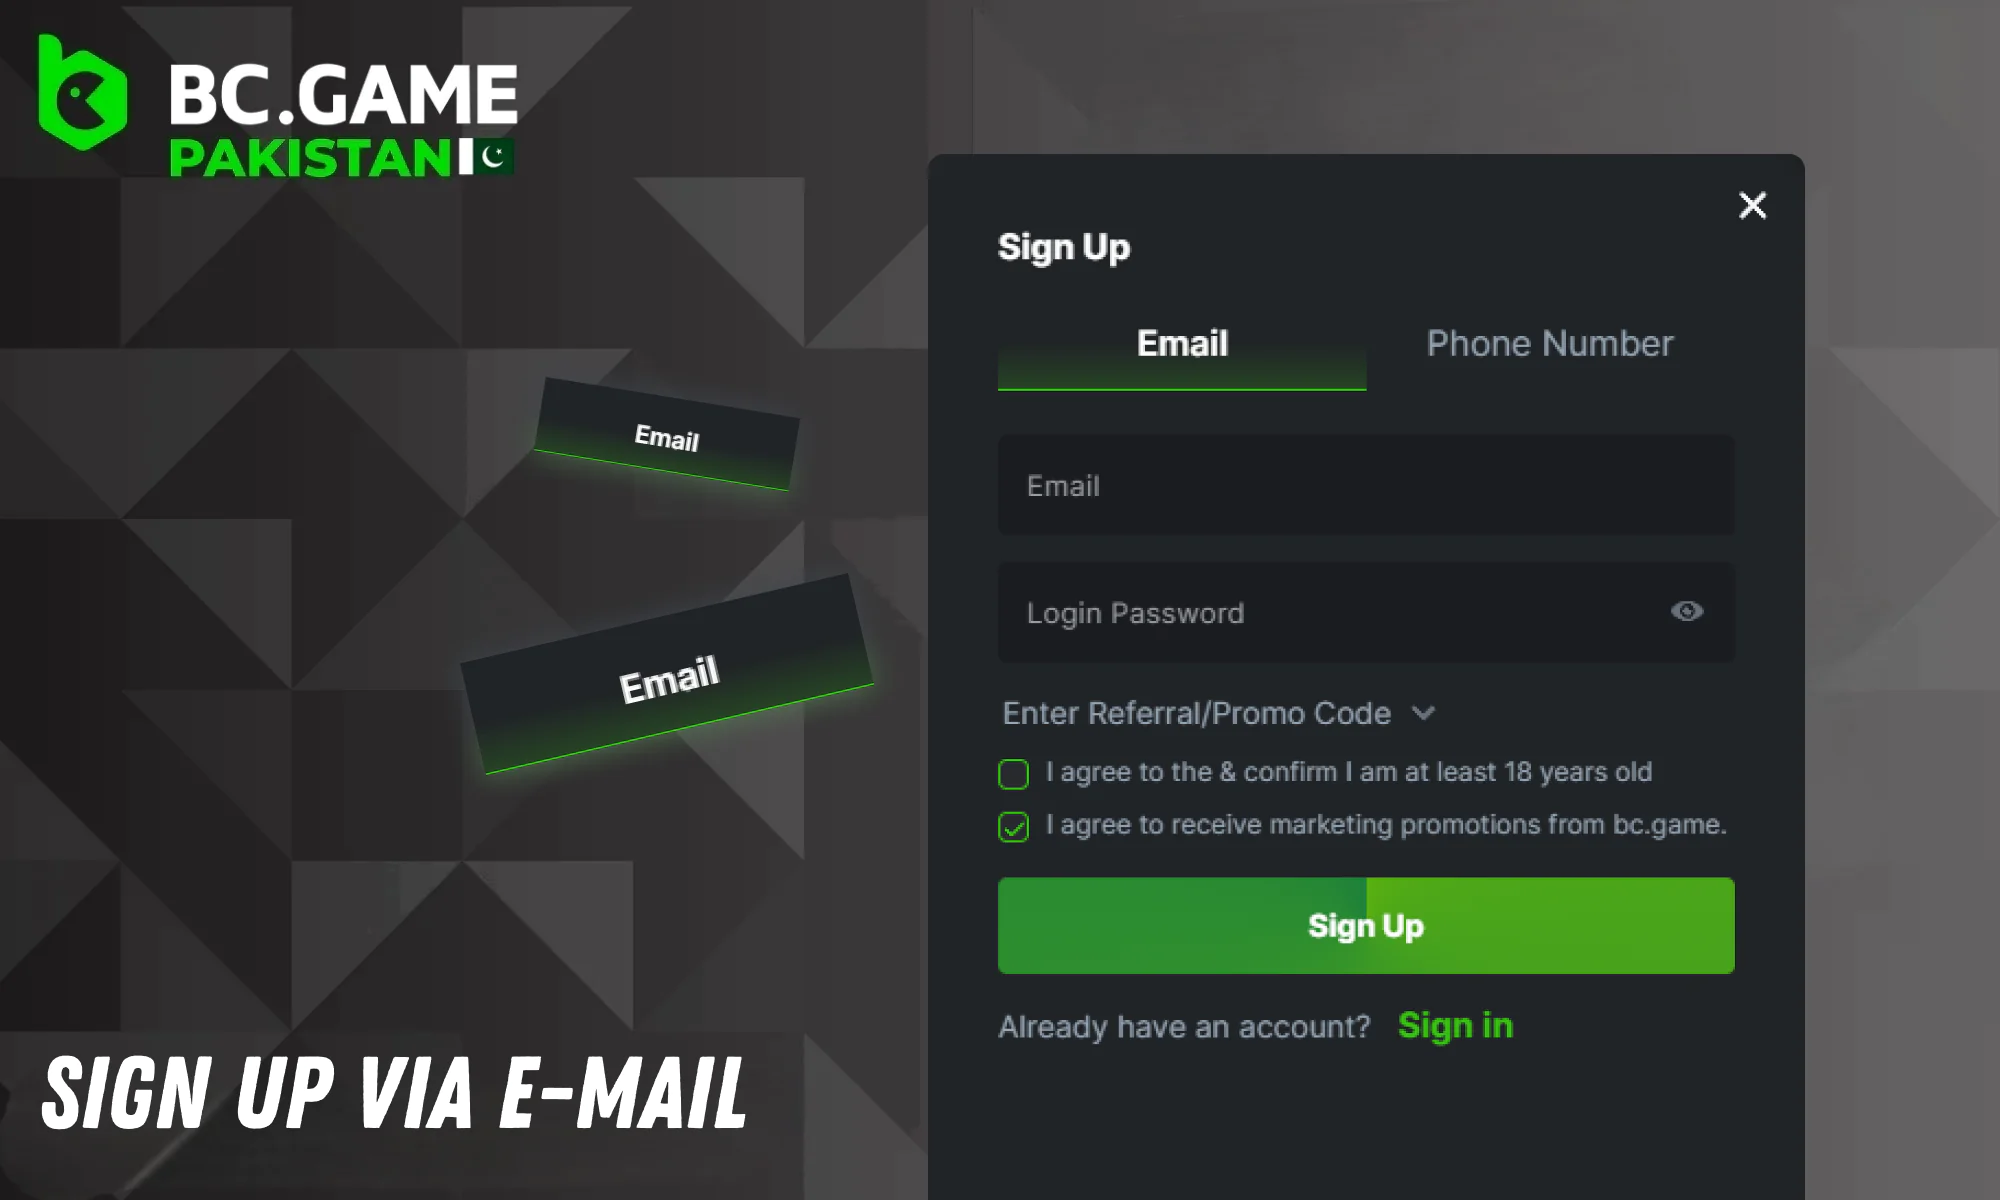 Create an account via E-mail at BC Game